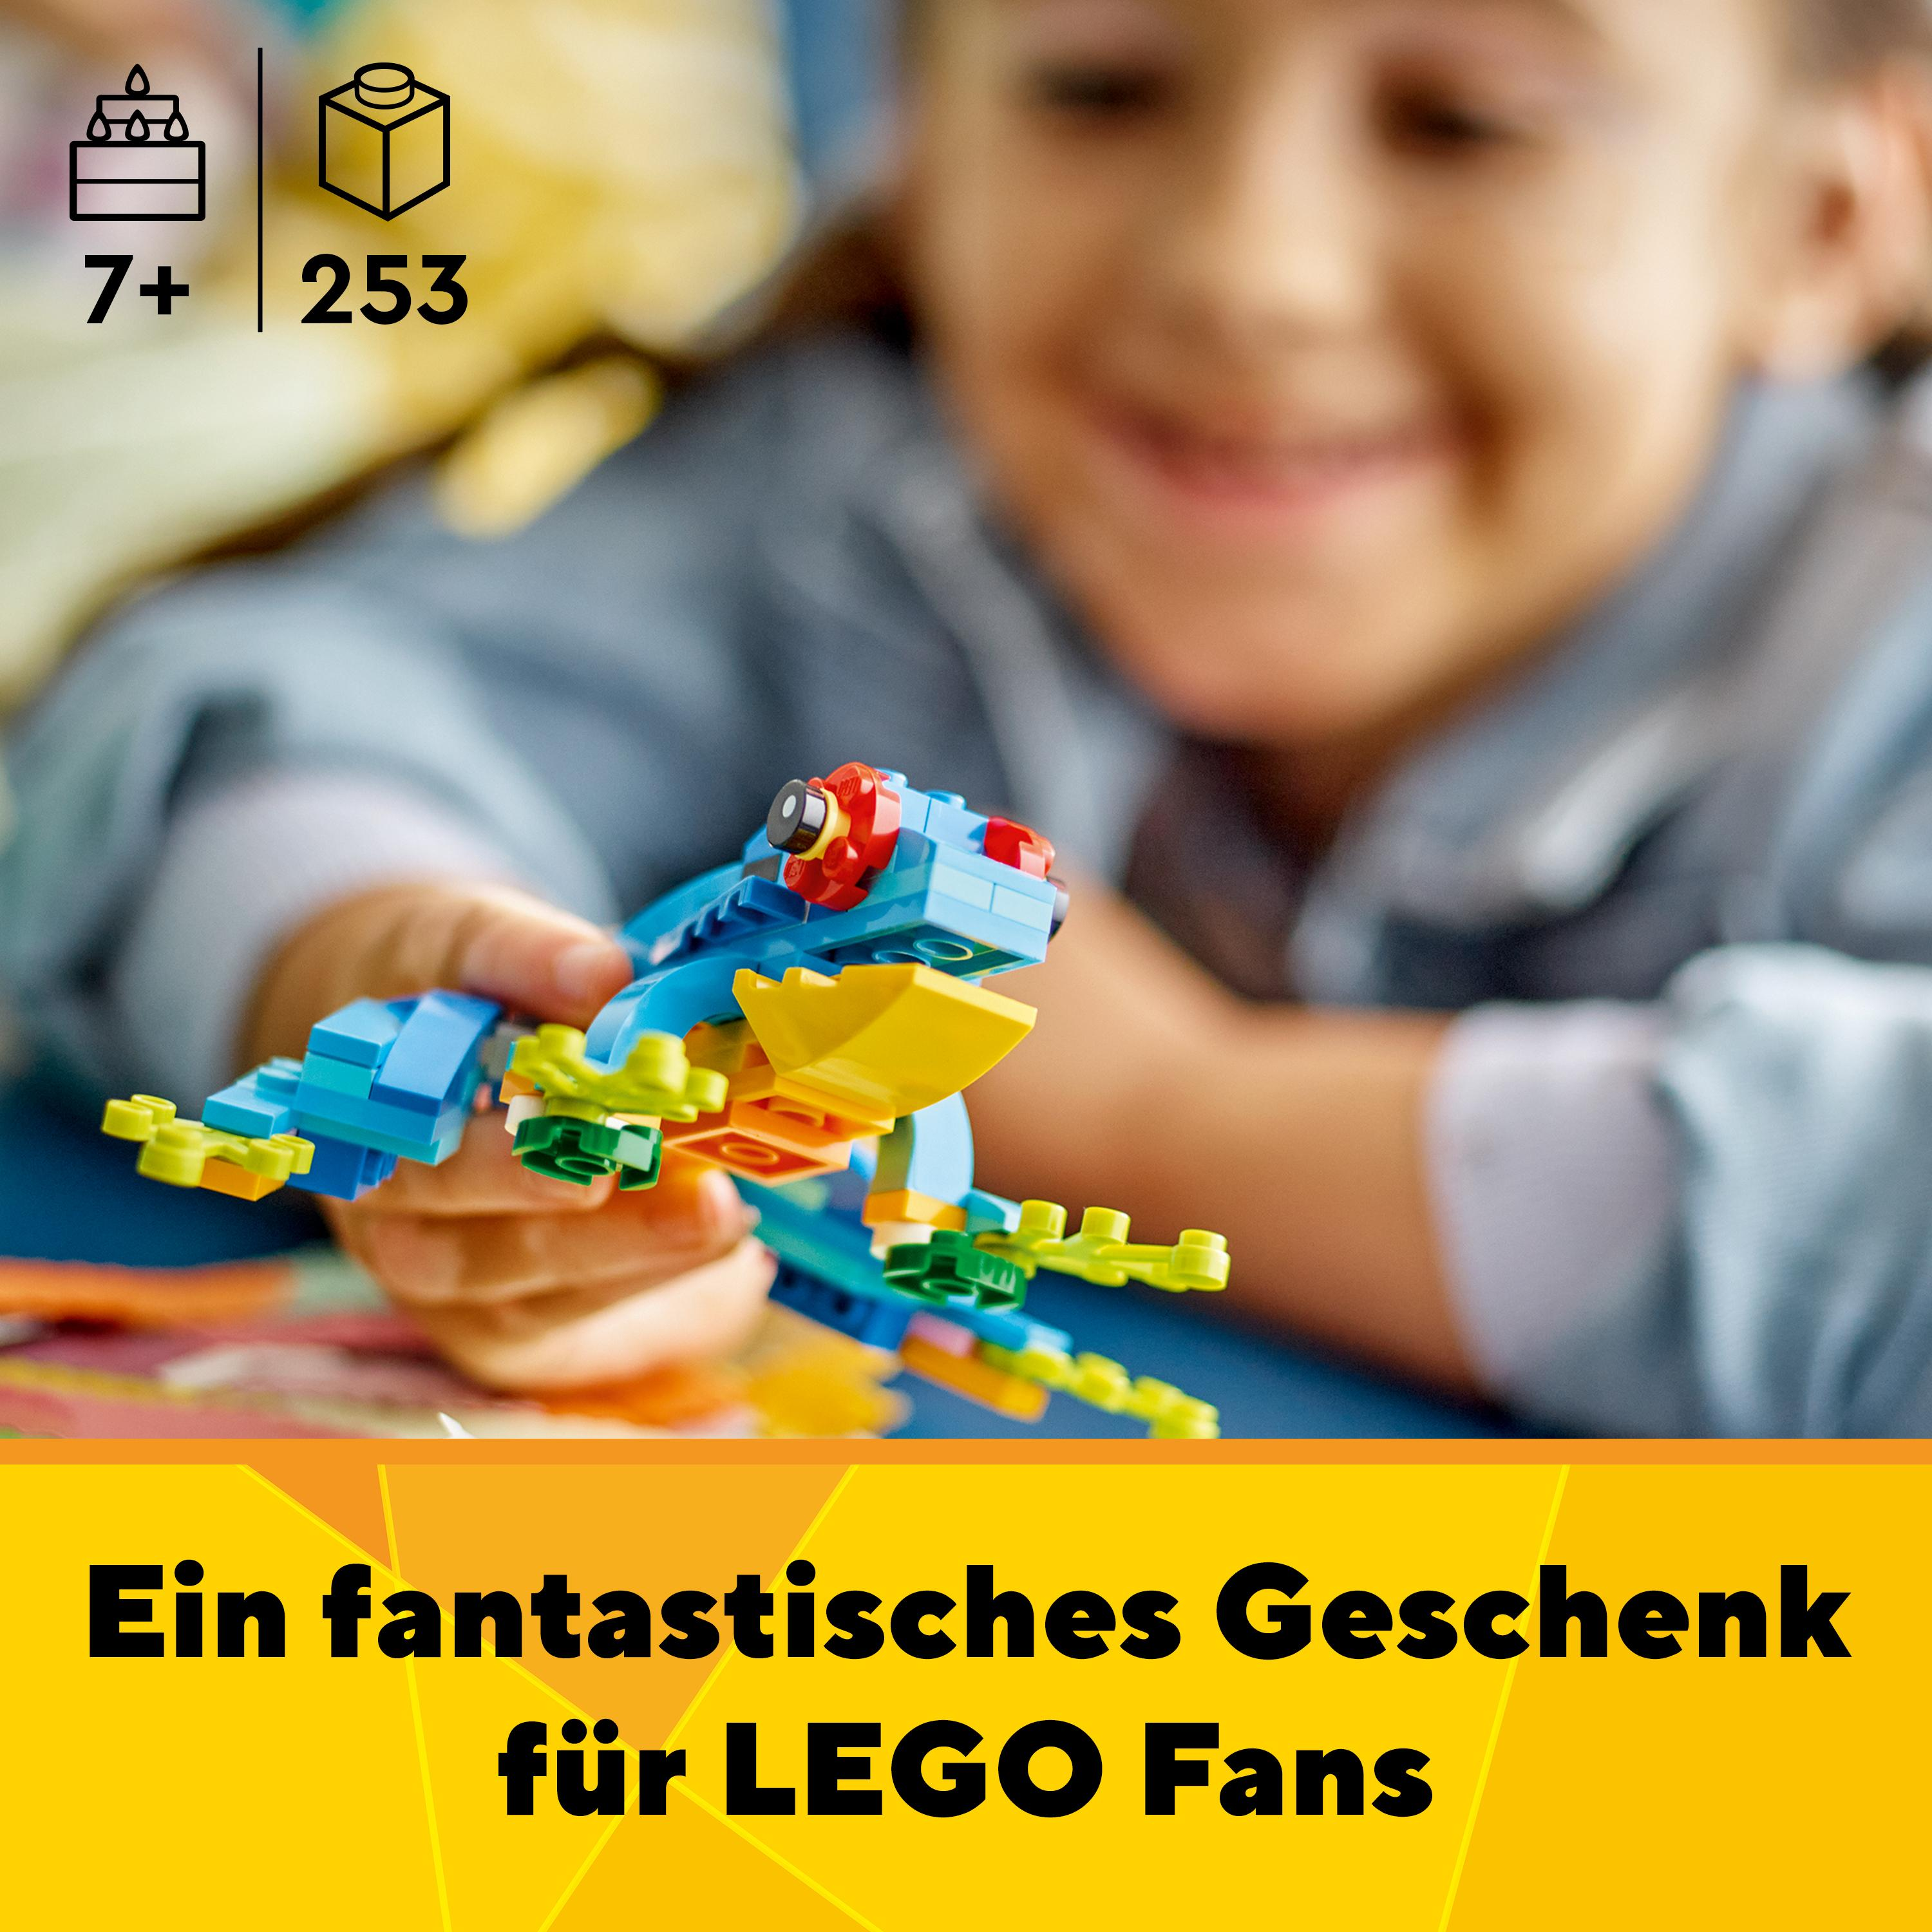 LEGO Creator Exotischer 31136 Bausatz, Mehrfarbig Papagei